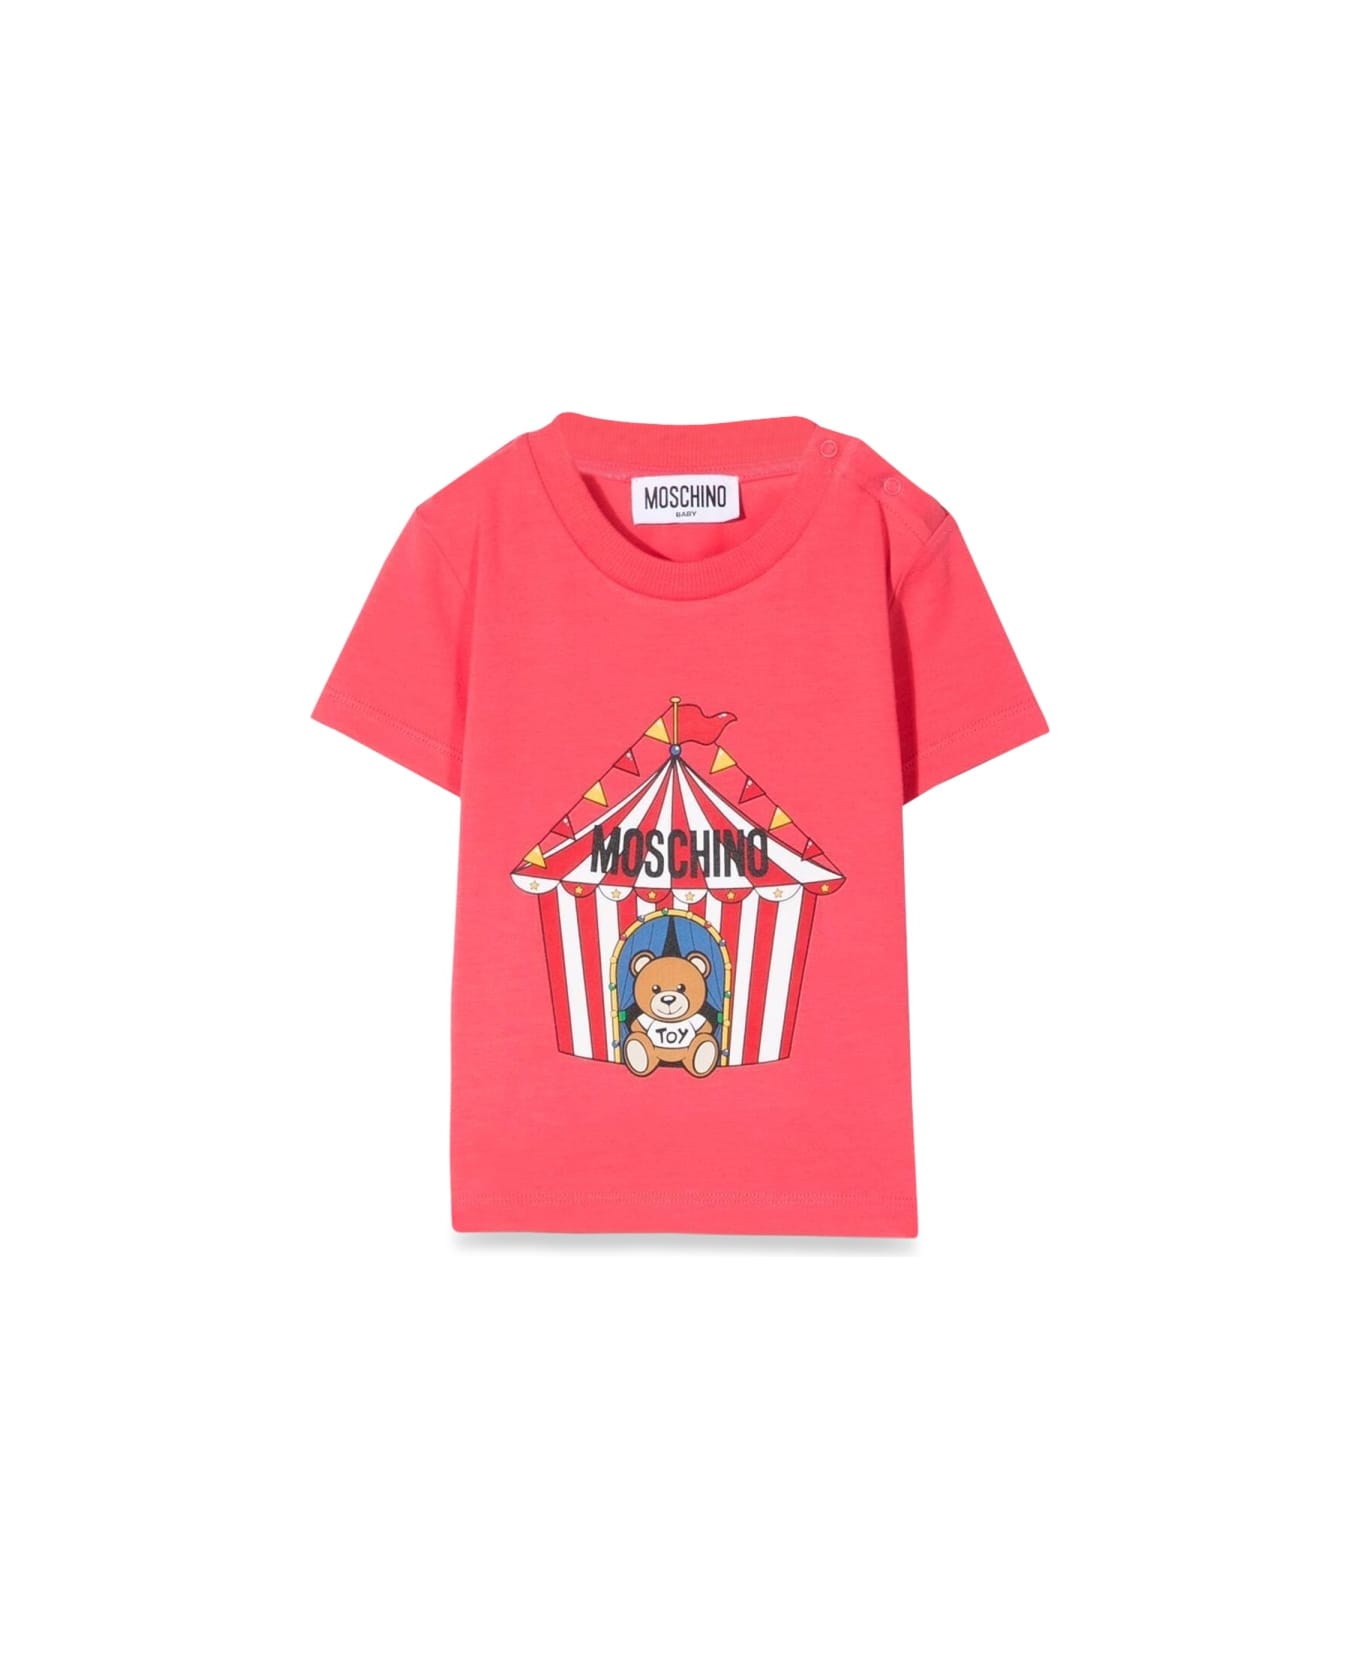 Moschino T-shirt - PINK